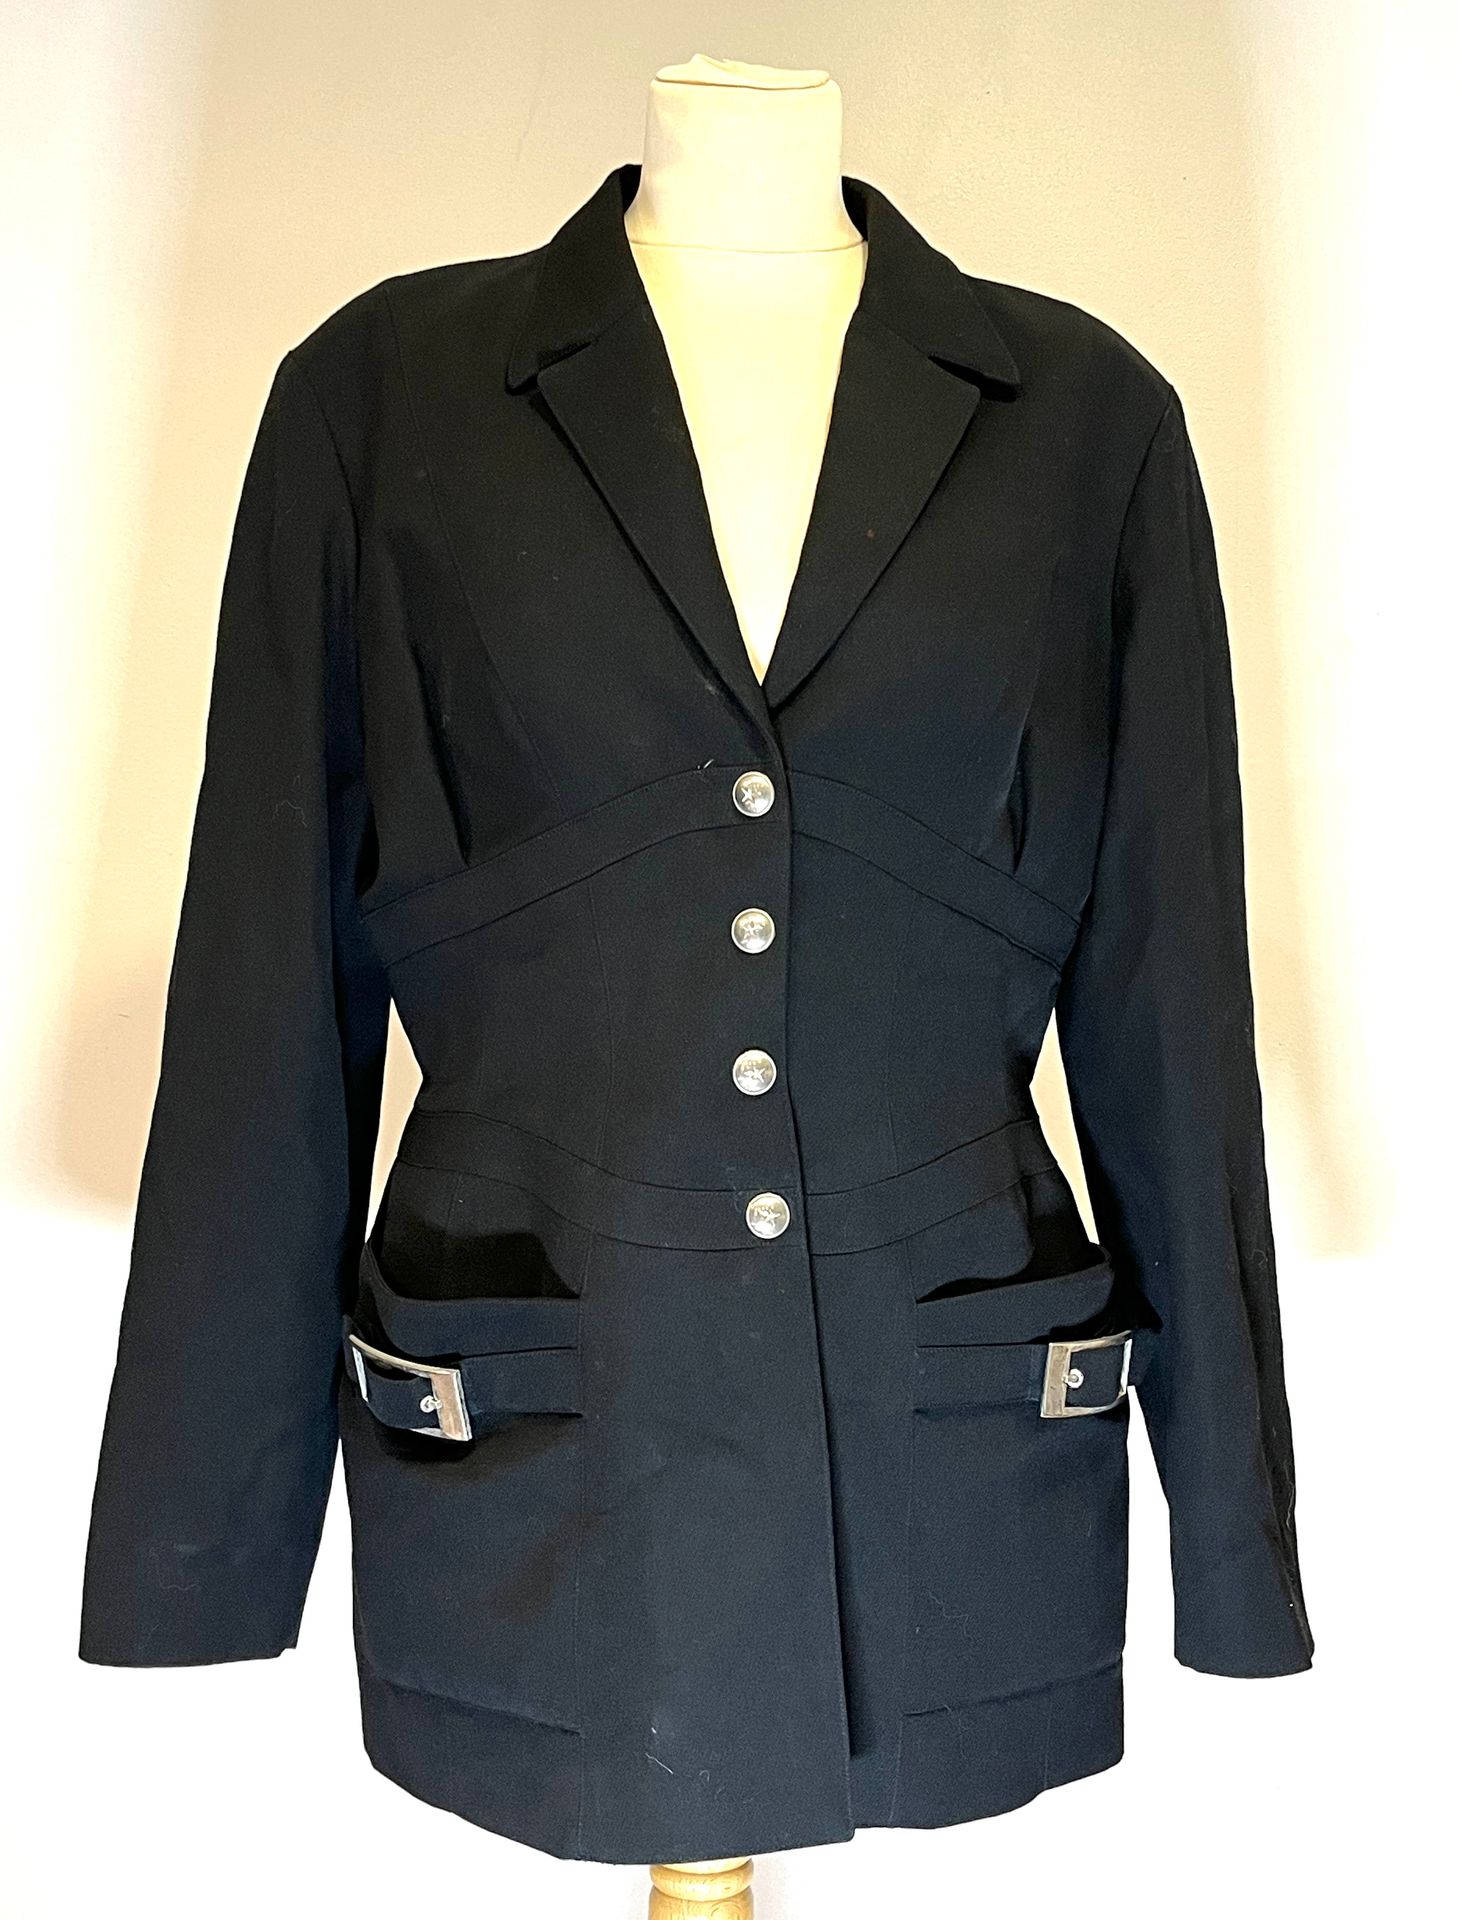 Null 蒂埃里-穆格莱。黑色羊毛长外套，腰线上的镶嵌细节形成了一个类似胸衣的形状，正面由银色扣子封闭。前面有两个贴袋，并配有皮带环。